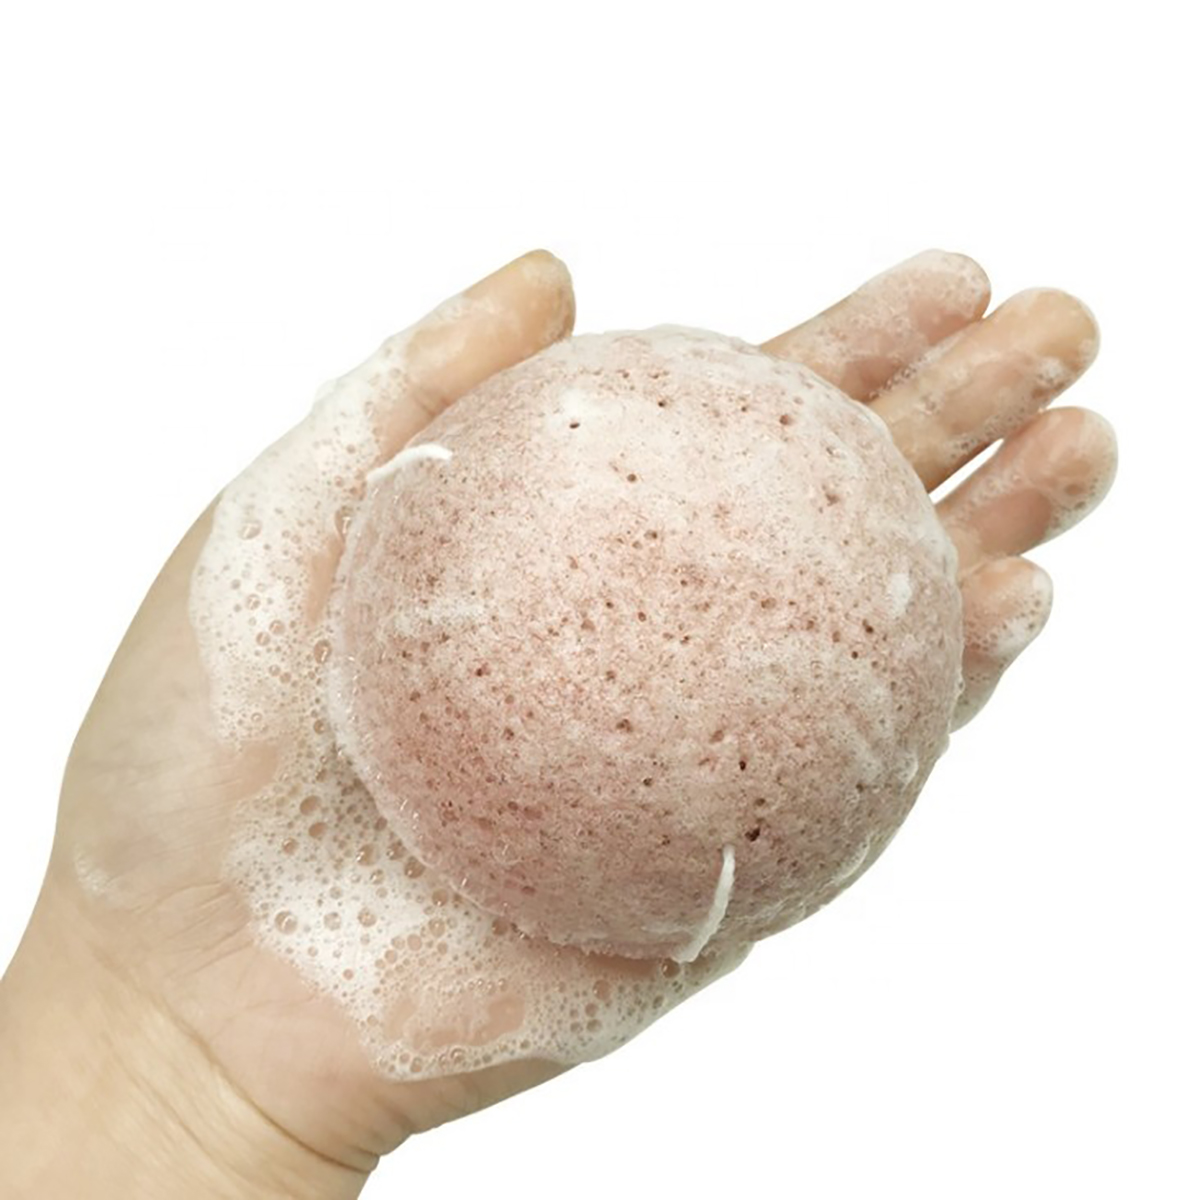 Mút rửa mặt Konjac Nhật Bản, hiệu quả làm sạch da, tẩy trang, mát xa, tẩy tế bào chết MINISO NATURAL KONJAC CLEANSING SPONGE chính hãng màu hồng nhạt – MNS082